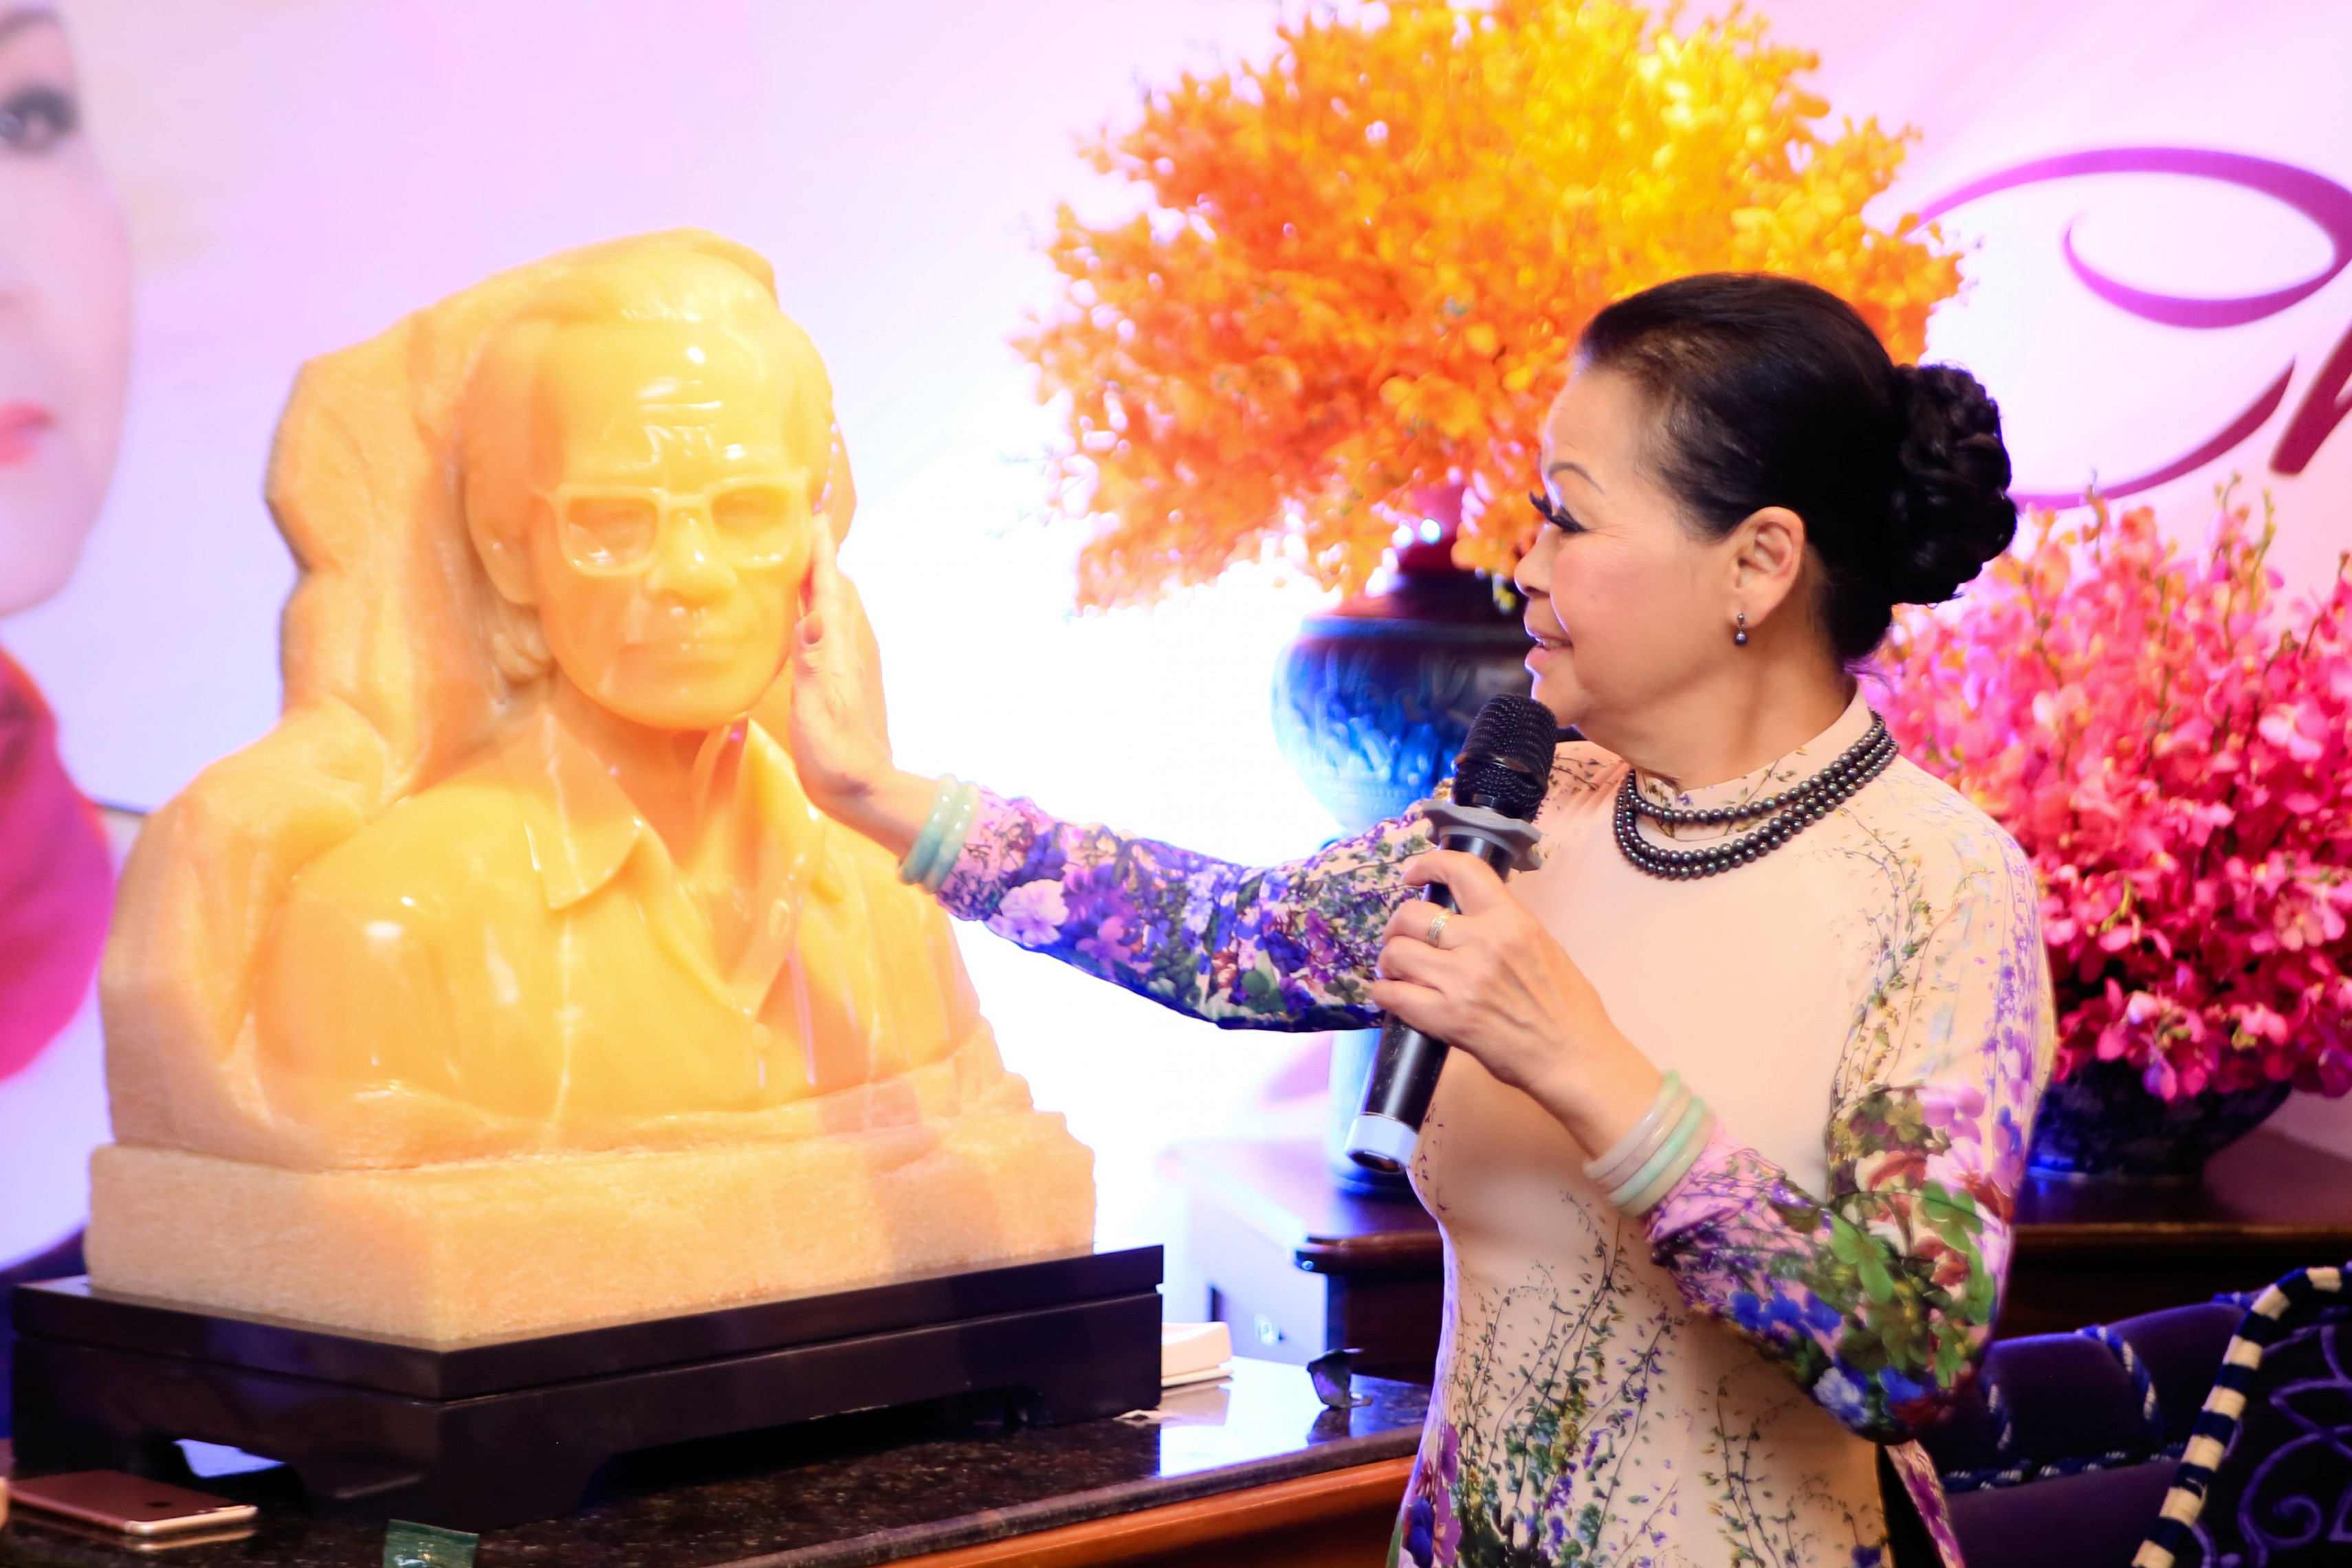 Trong buổi trà đàm, nữ ca sĩ cao niên vô cùng xúc động khi được tặng một món quà bất ngờ: Bức tượng cố nhạc sĩ Trịnh Công Sơn được tạc bằng khối đá quý. 